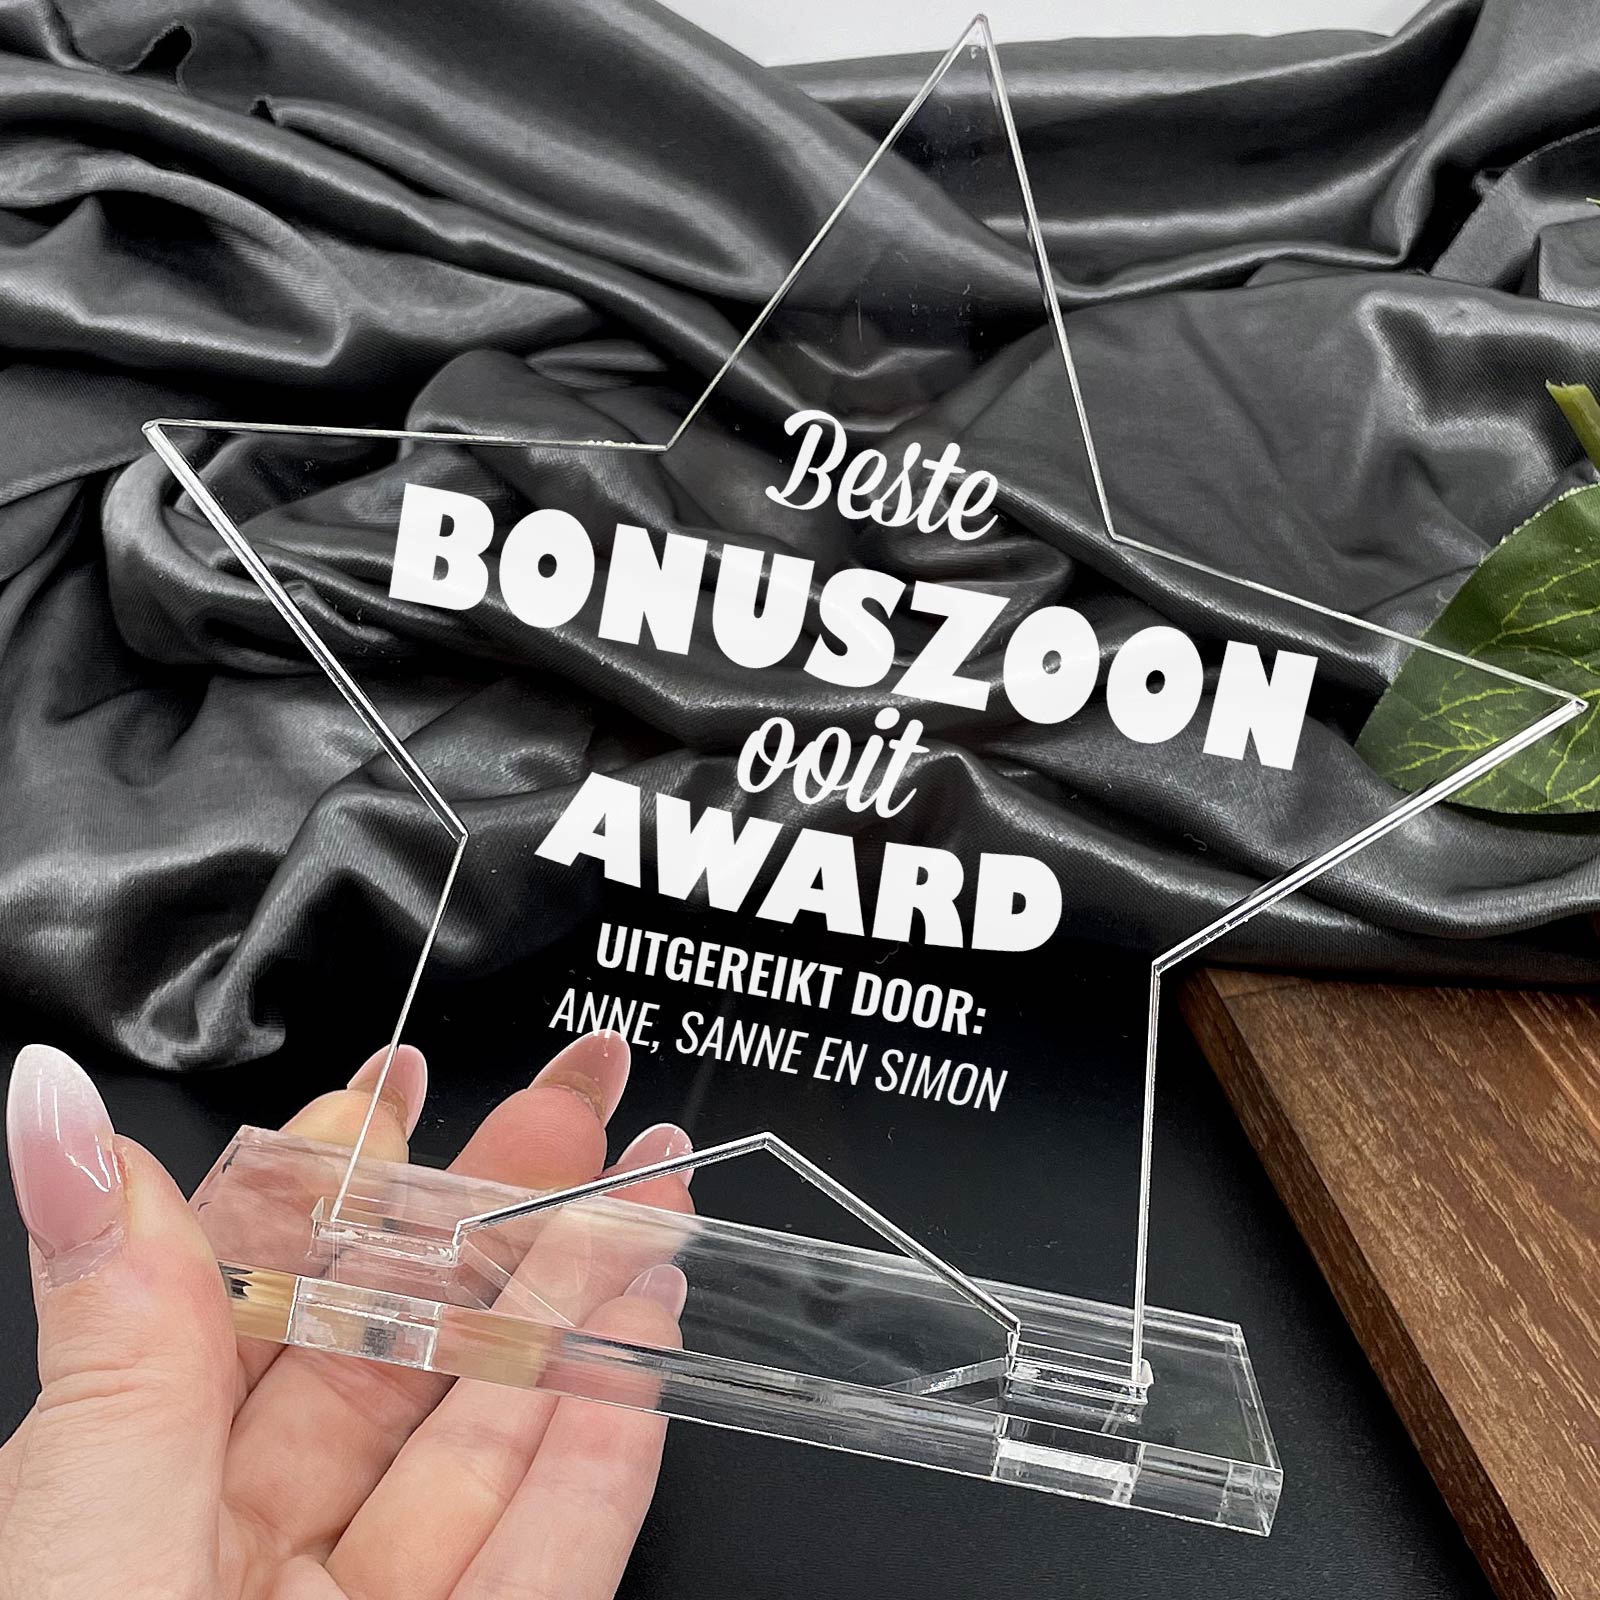 Beste Bonuszoon Ooit Award - Bella Mia